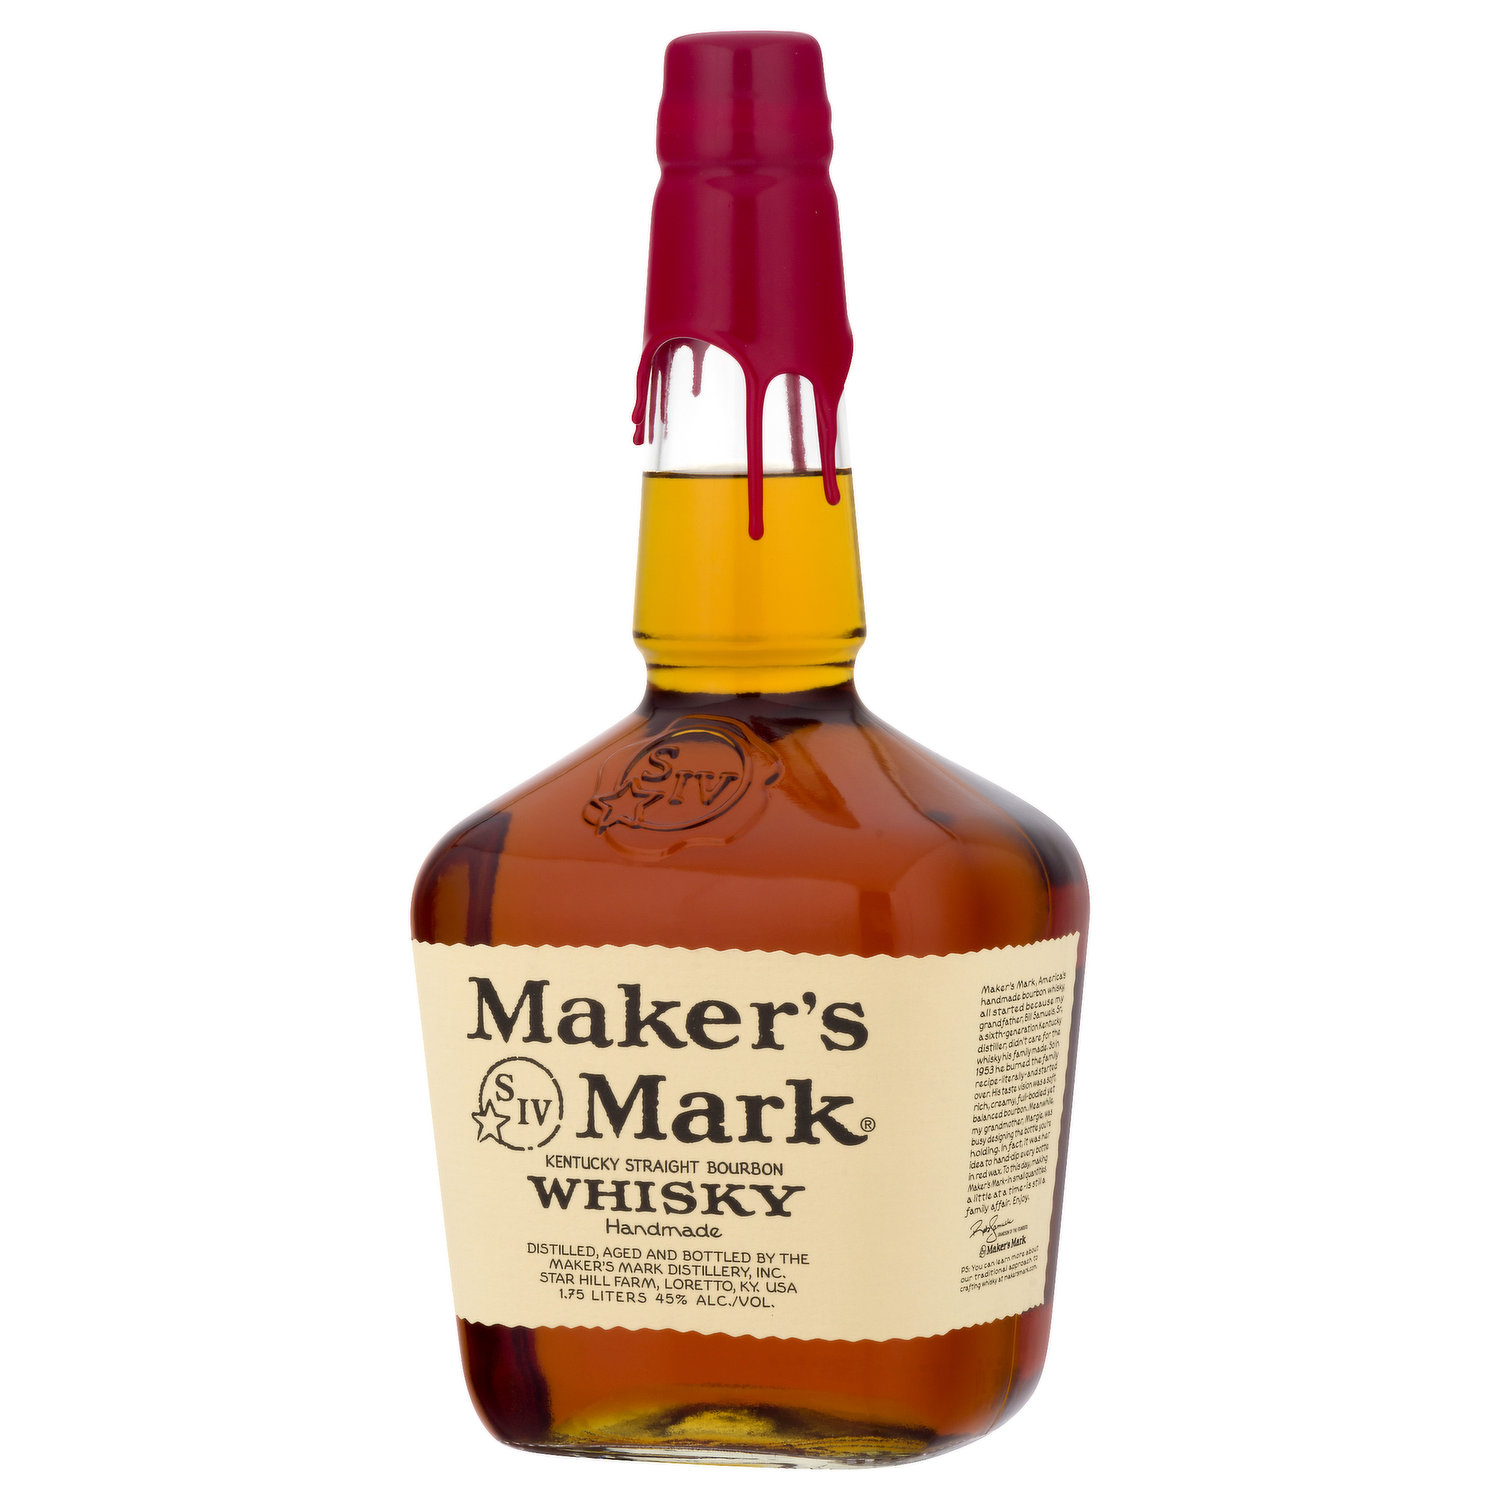 Maker's Mark Whisky, Kentucky Straight Bourbon